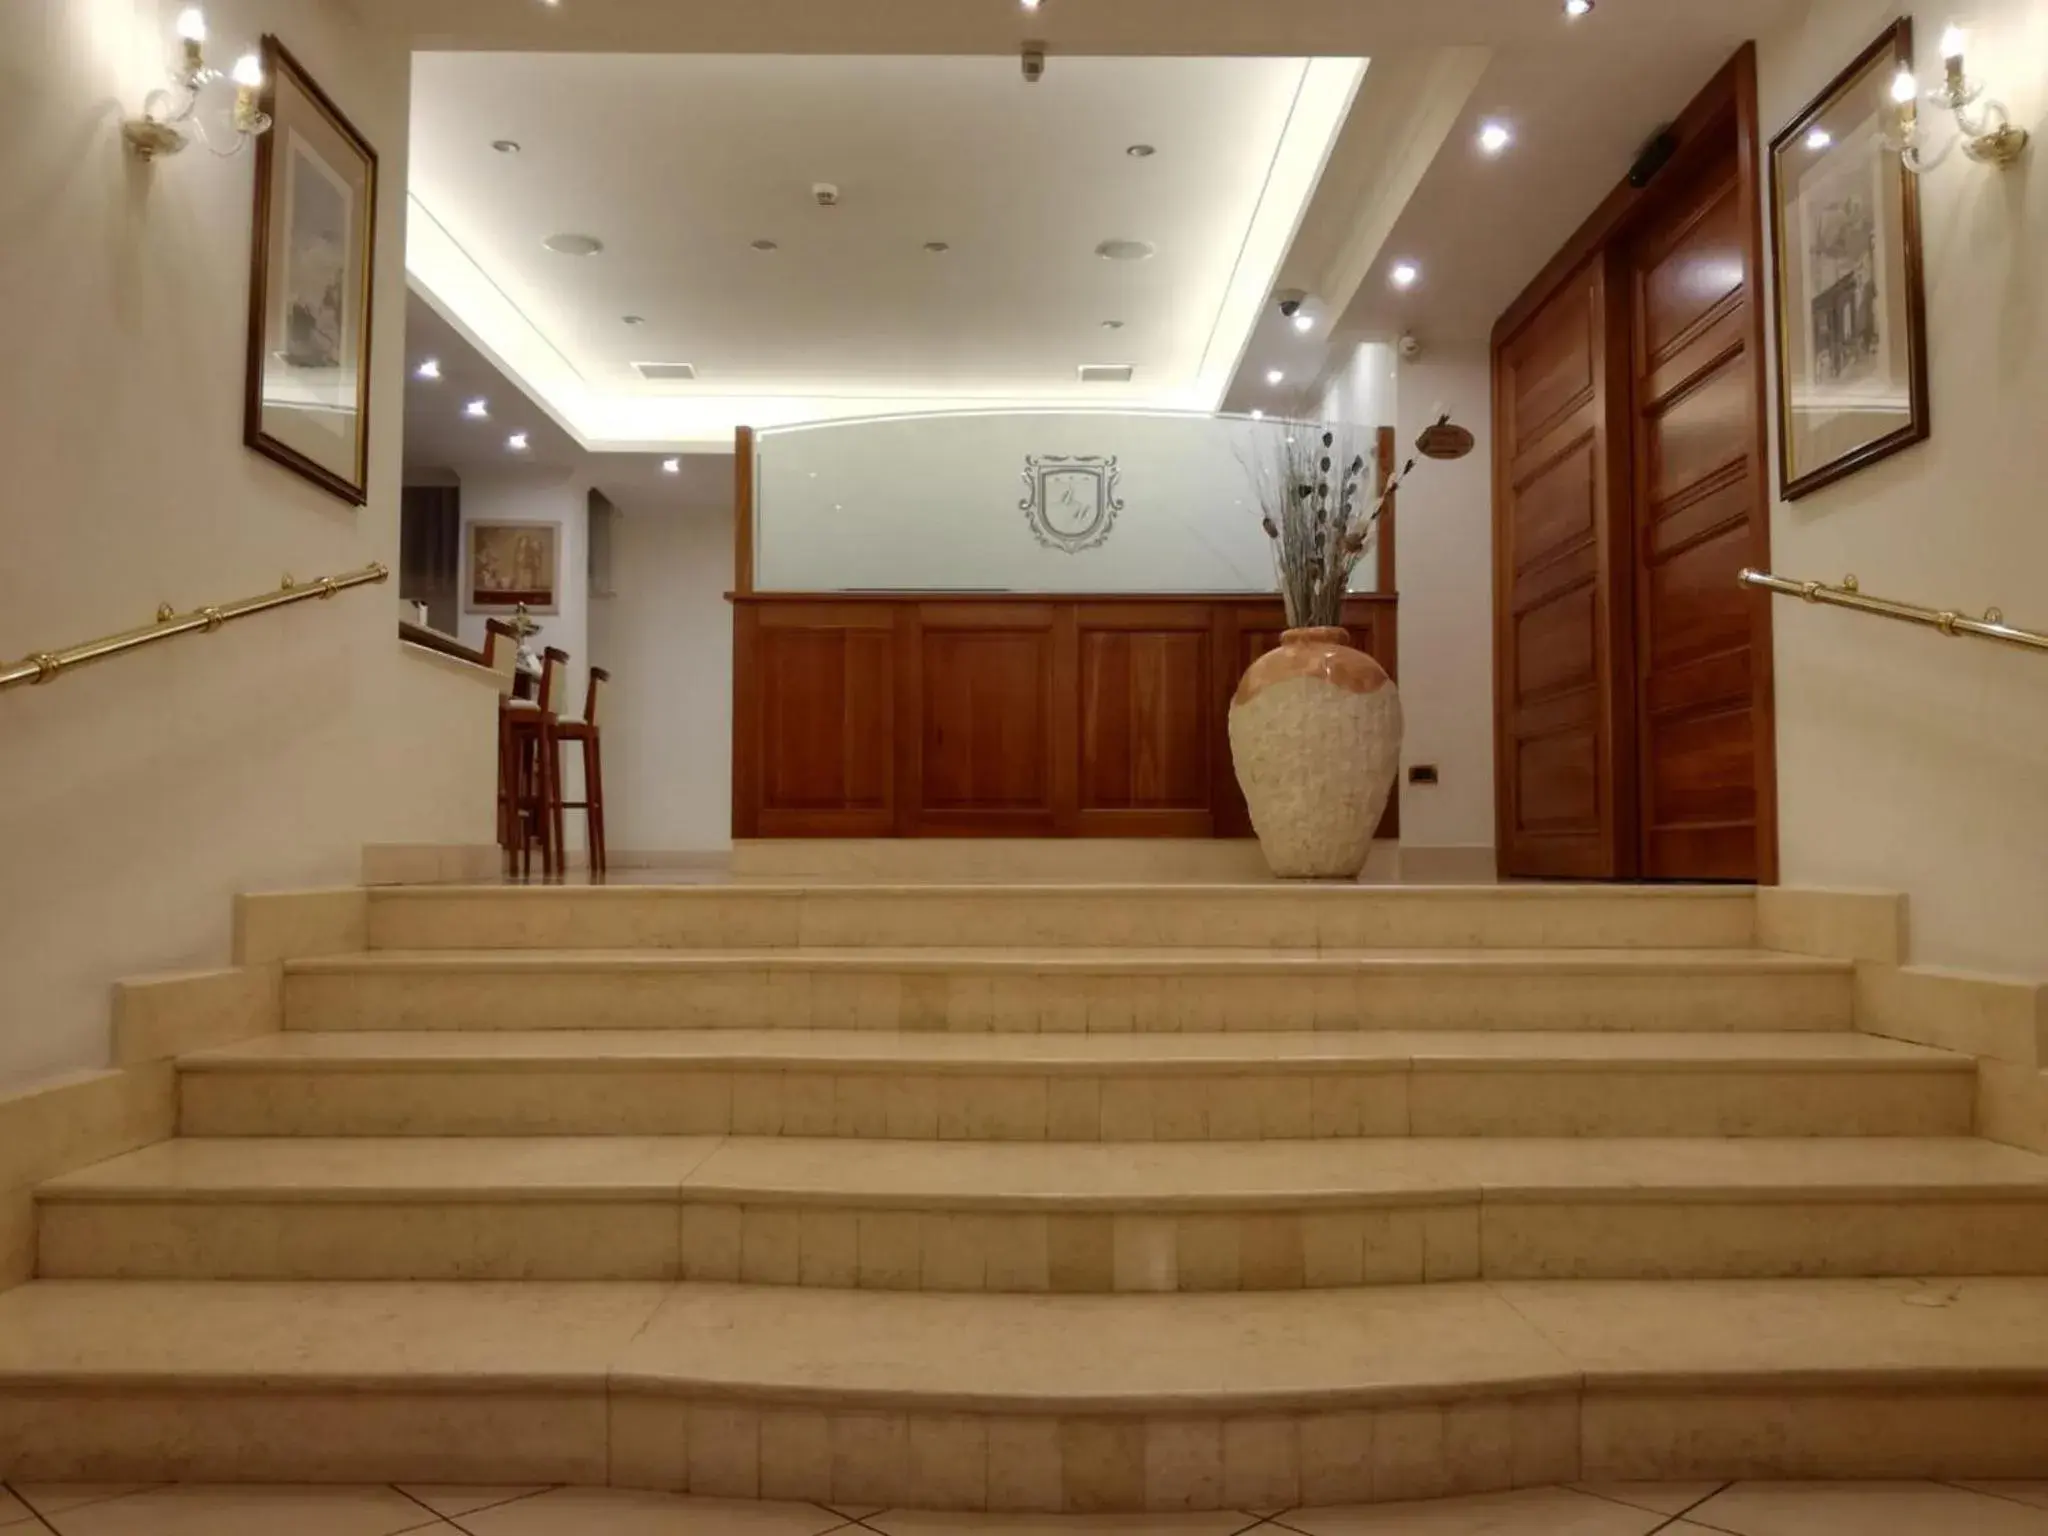 Lobby or reception in Buono Hotel